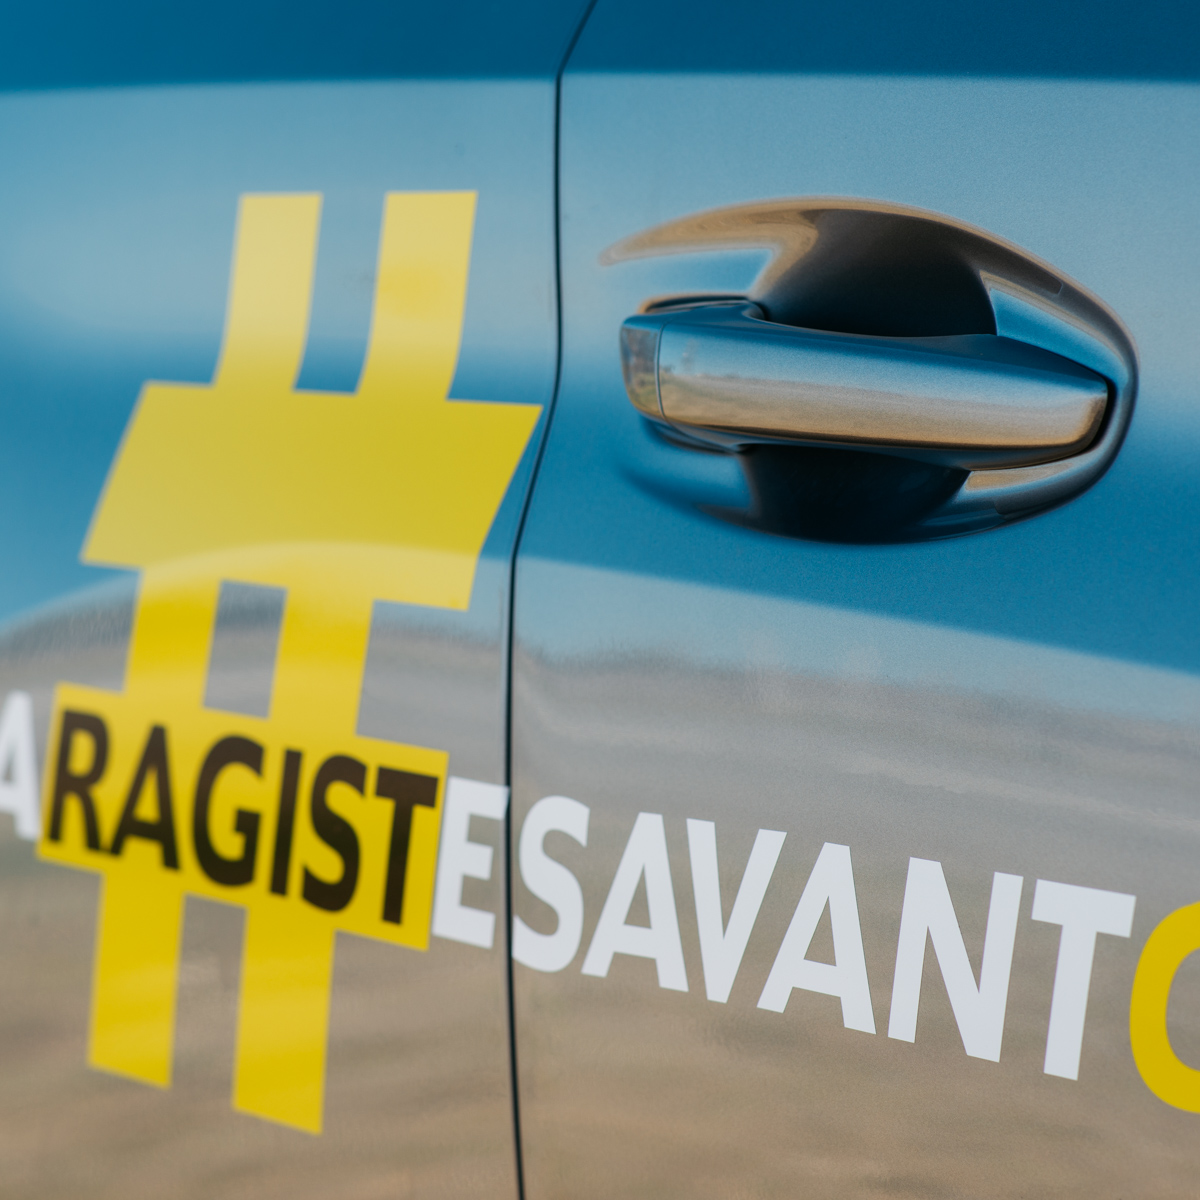 Road trip électrique en véhicule de courtoisie Peugeot e-208 #GaragistesAvantGardistes !